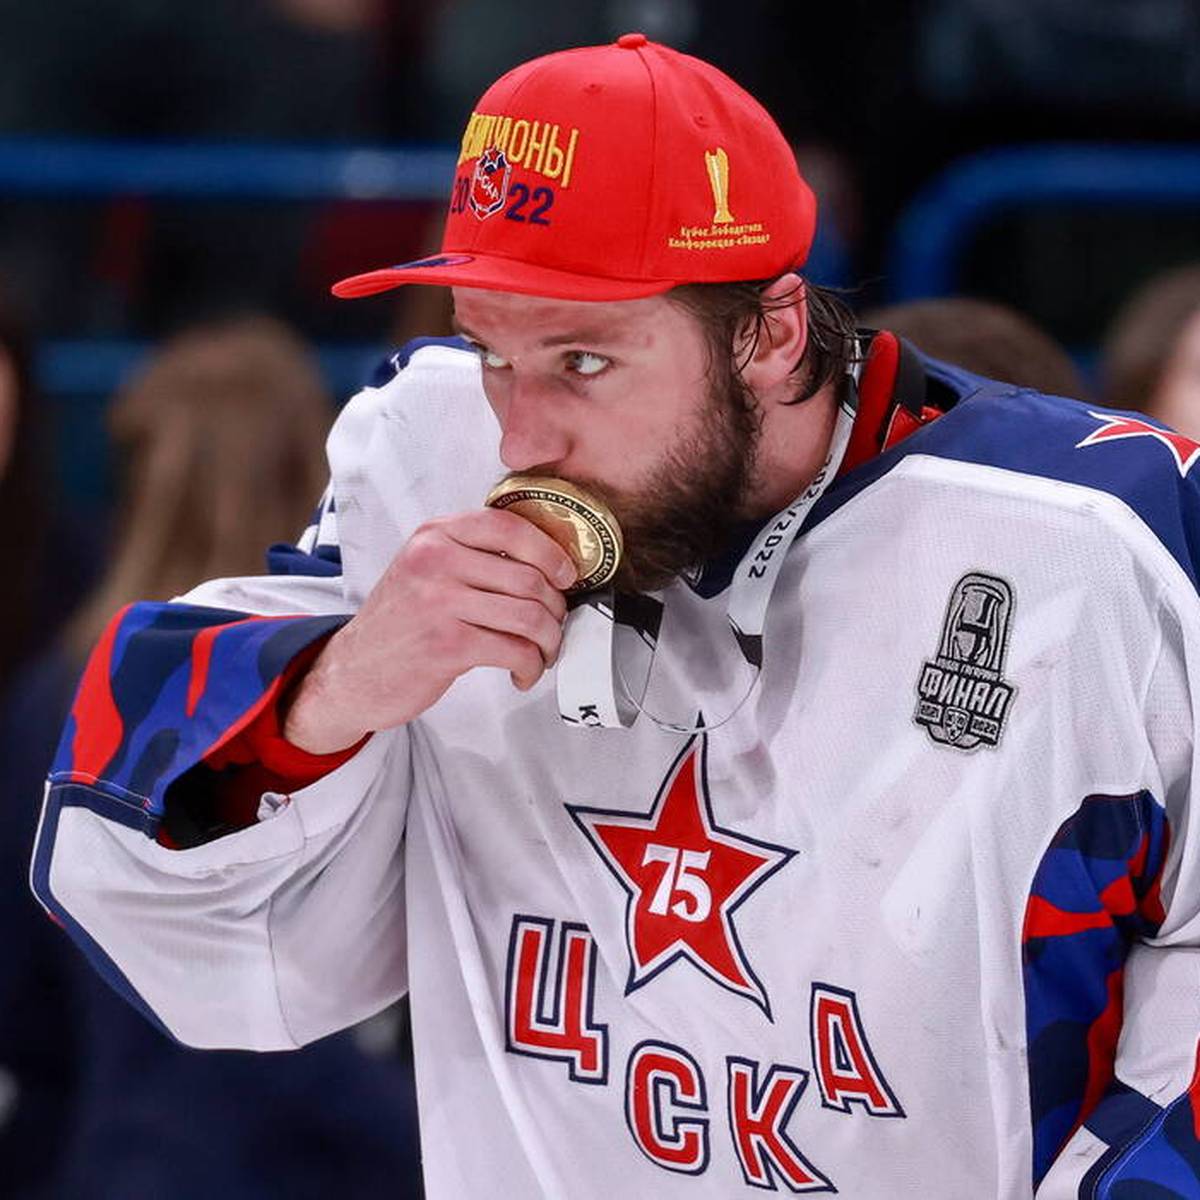 Ein russischer Nationalspieler wird in Russland festgenommen. Statt dem geplanten Wechsel in die NHL droht ihm nun offenbar der Militärdienst. 